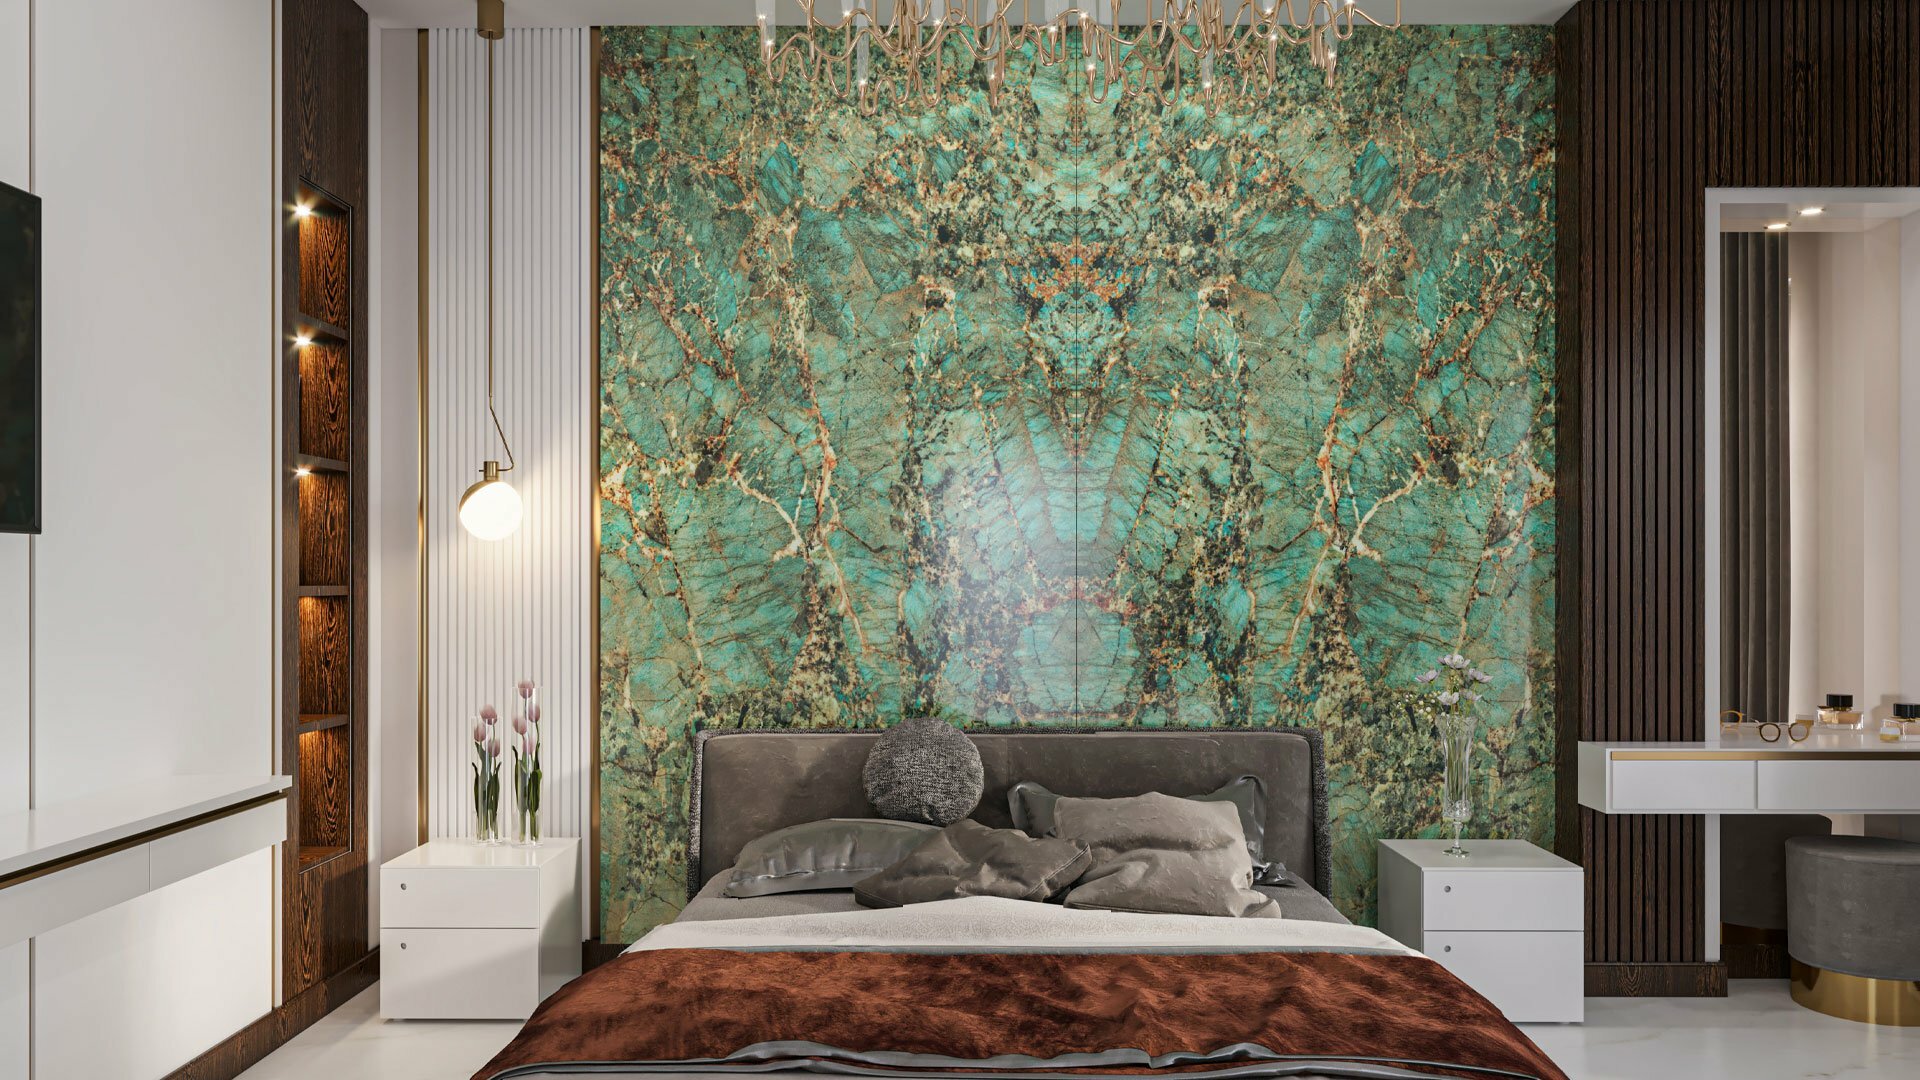 Mahceram Ceramic Tiles | Melbourne & Amazonite Turquoise